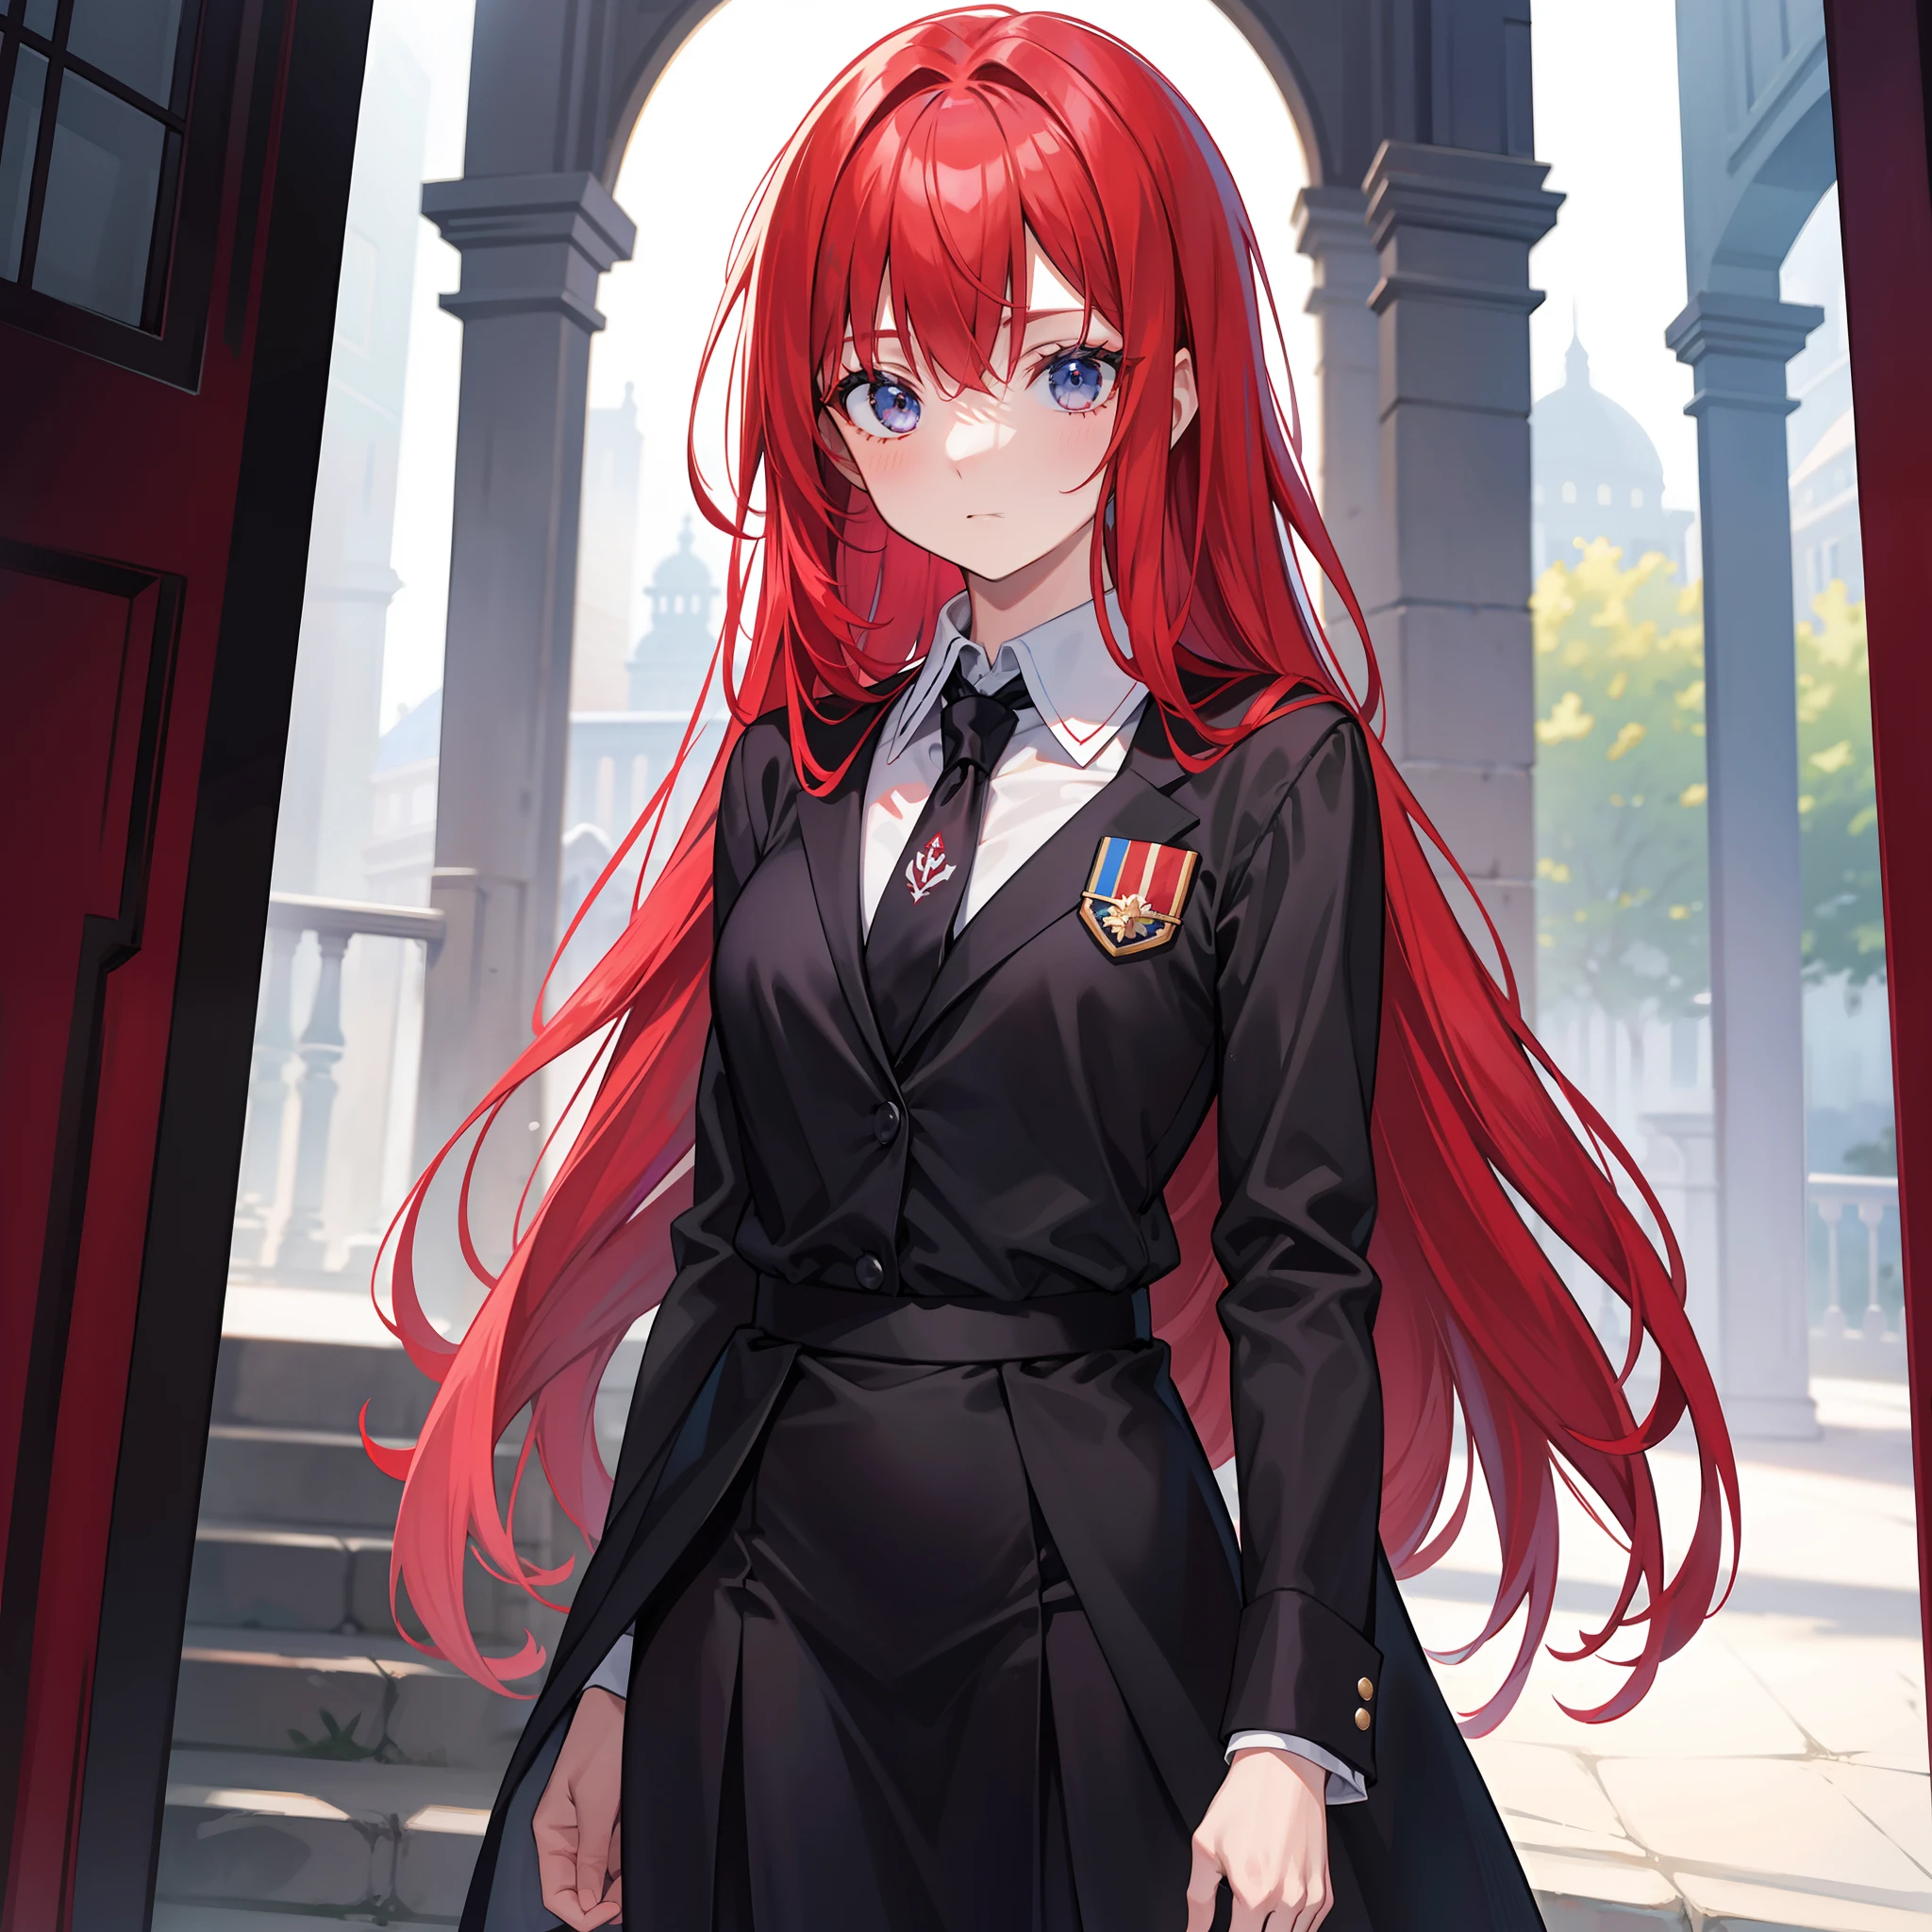 الأخت الملكية ذات الشعر الأحمر الرياضية ذات ربطة عنق حريرية سوداء